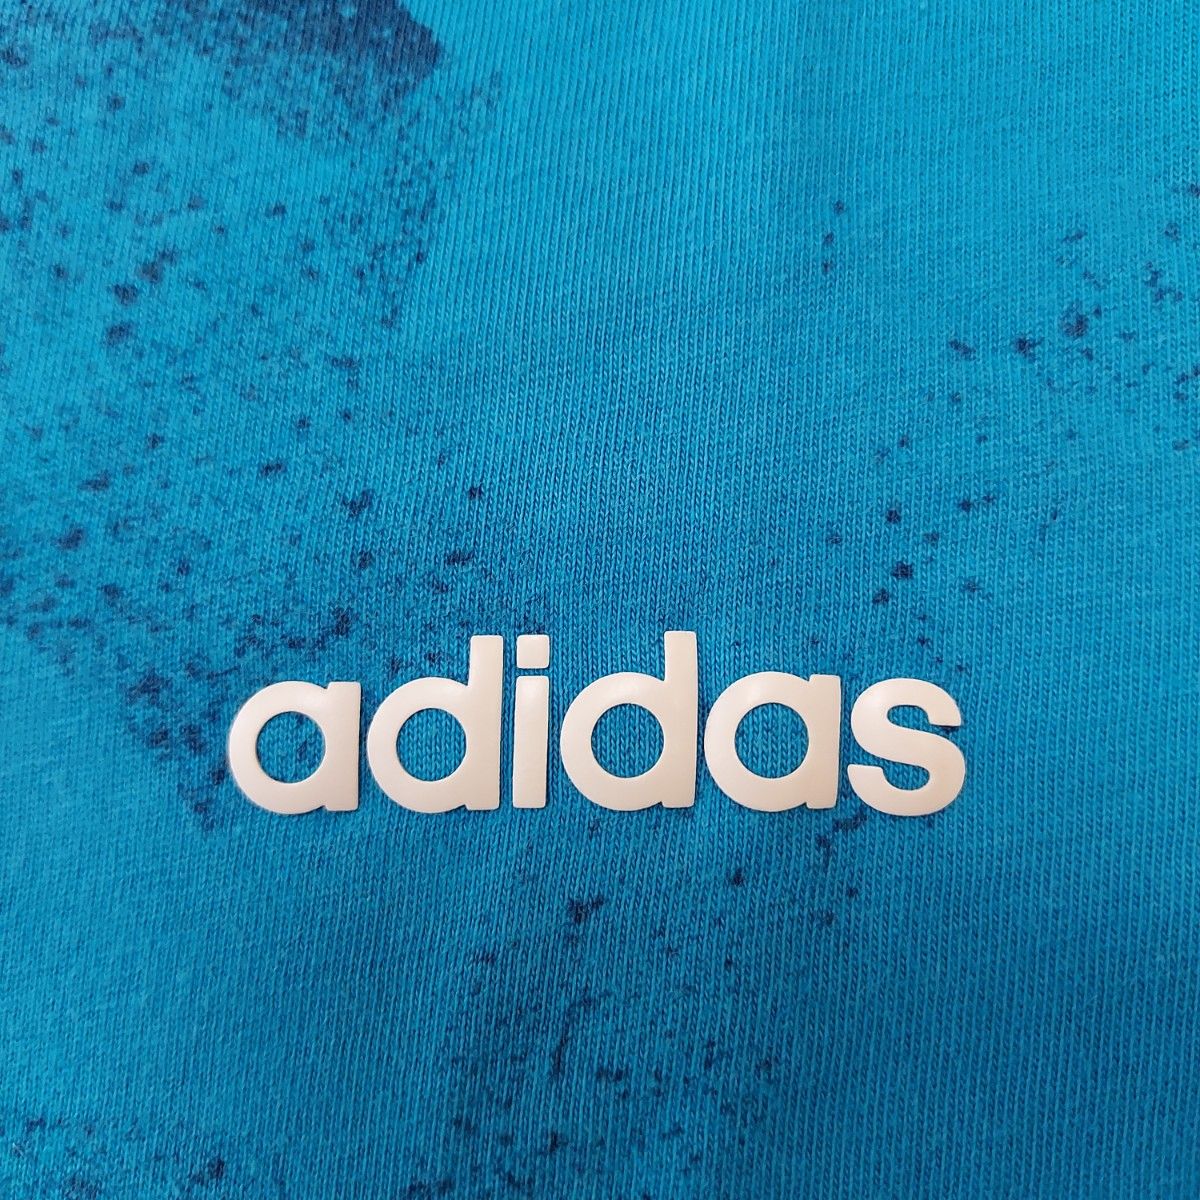 adidas アディダス 半袖Tシャツ ２枚 140 ジュニア KIDS 